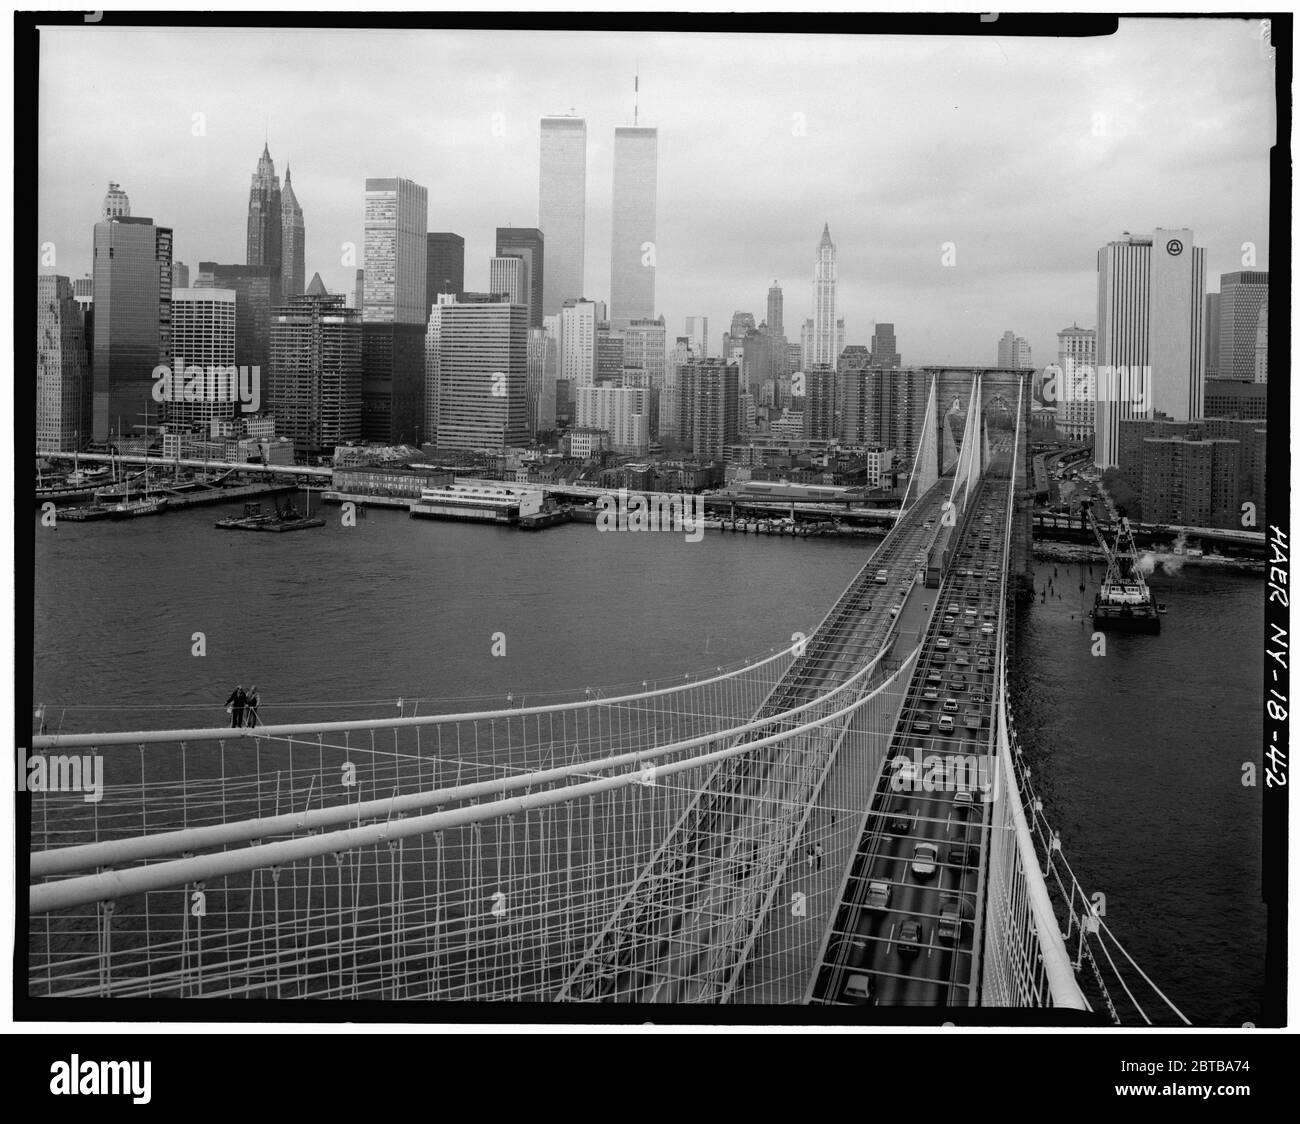 1982 , NEW YORK , USA : vue du dessus de Brooklyn Tower regardant NW montrant les câbles principaux et les suspenseurs avec le bas Manhattan en arrière-plan. Pont de Brooklyn, Spanning East River entre Park Row, Manhattan et Sands Street, Brooklyn, New York, New York County, NY le grand pont suspendu de East River, a ouvert le jour 24 mai 1883. Reliant les villes de New York et Brooklyn . Photo de Jet Lowe ( images du gouvernement américain ) - PONT DE BROOKLYN - PONTE DI BROOKLYN - FOTO STORICHE - HISTOIRE - GEOGRAFIA - GÉOGRAPHIE - paysage - paesaggio - veduta - panorama - fiume Hudson River - l Banque D'Images